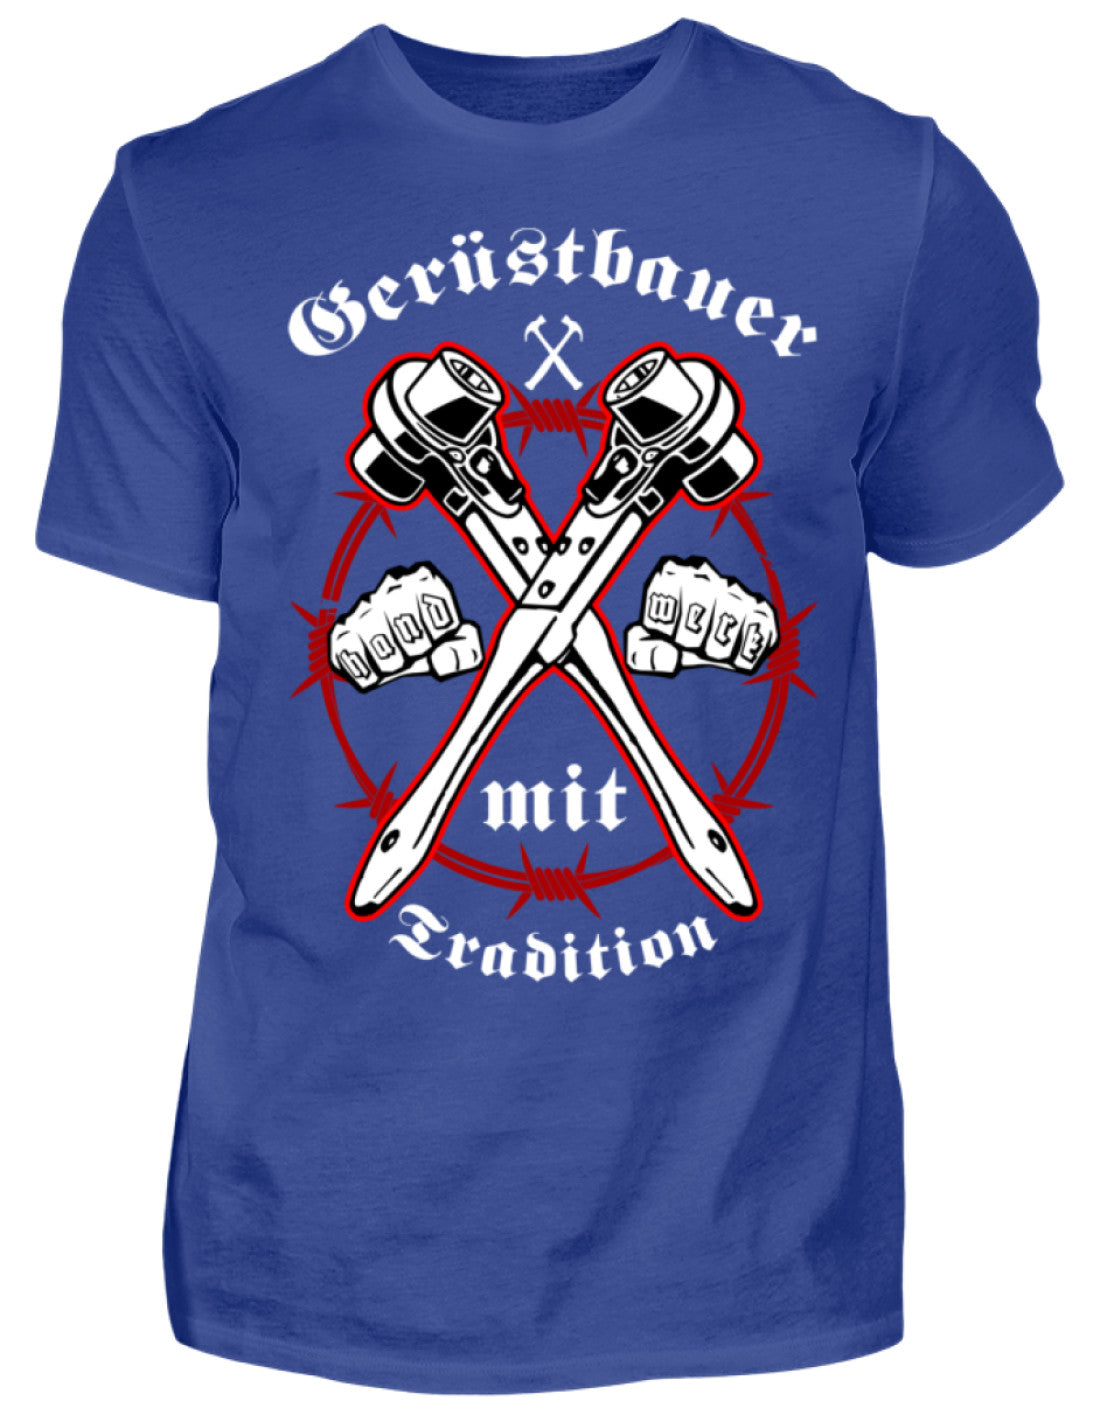 Gerüstbauer T-Shirt - Handwerk mit Tradition €21.95 Gerüstbauer - Shop >>